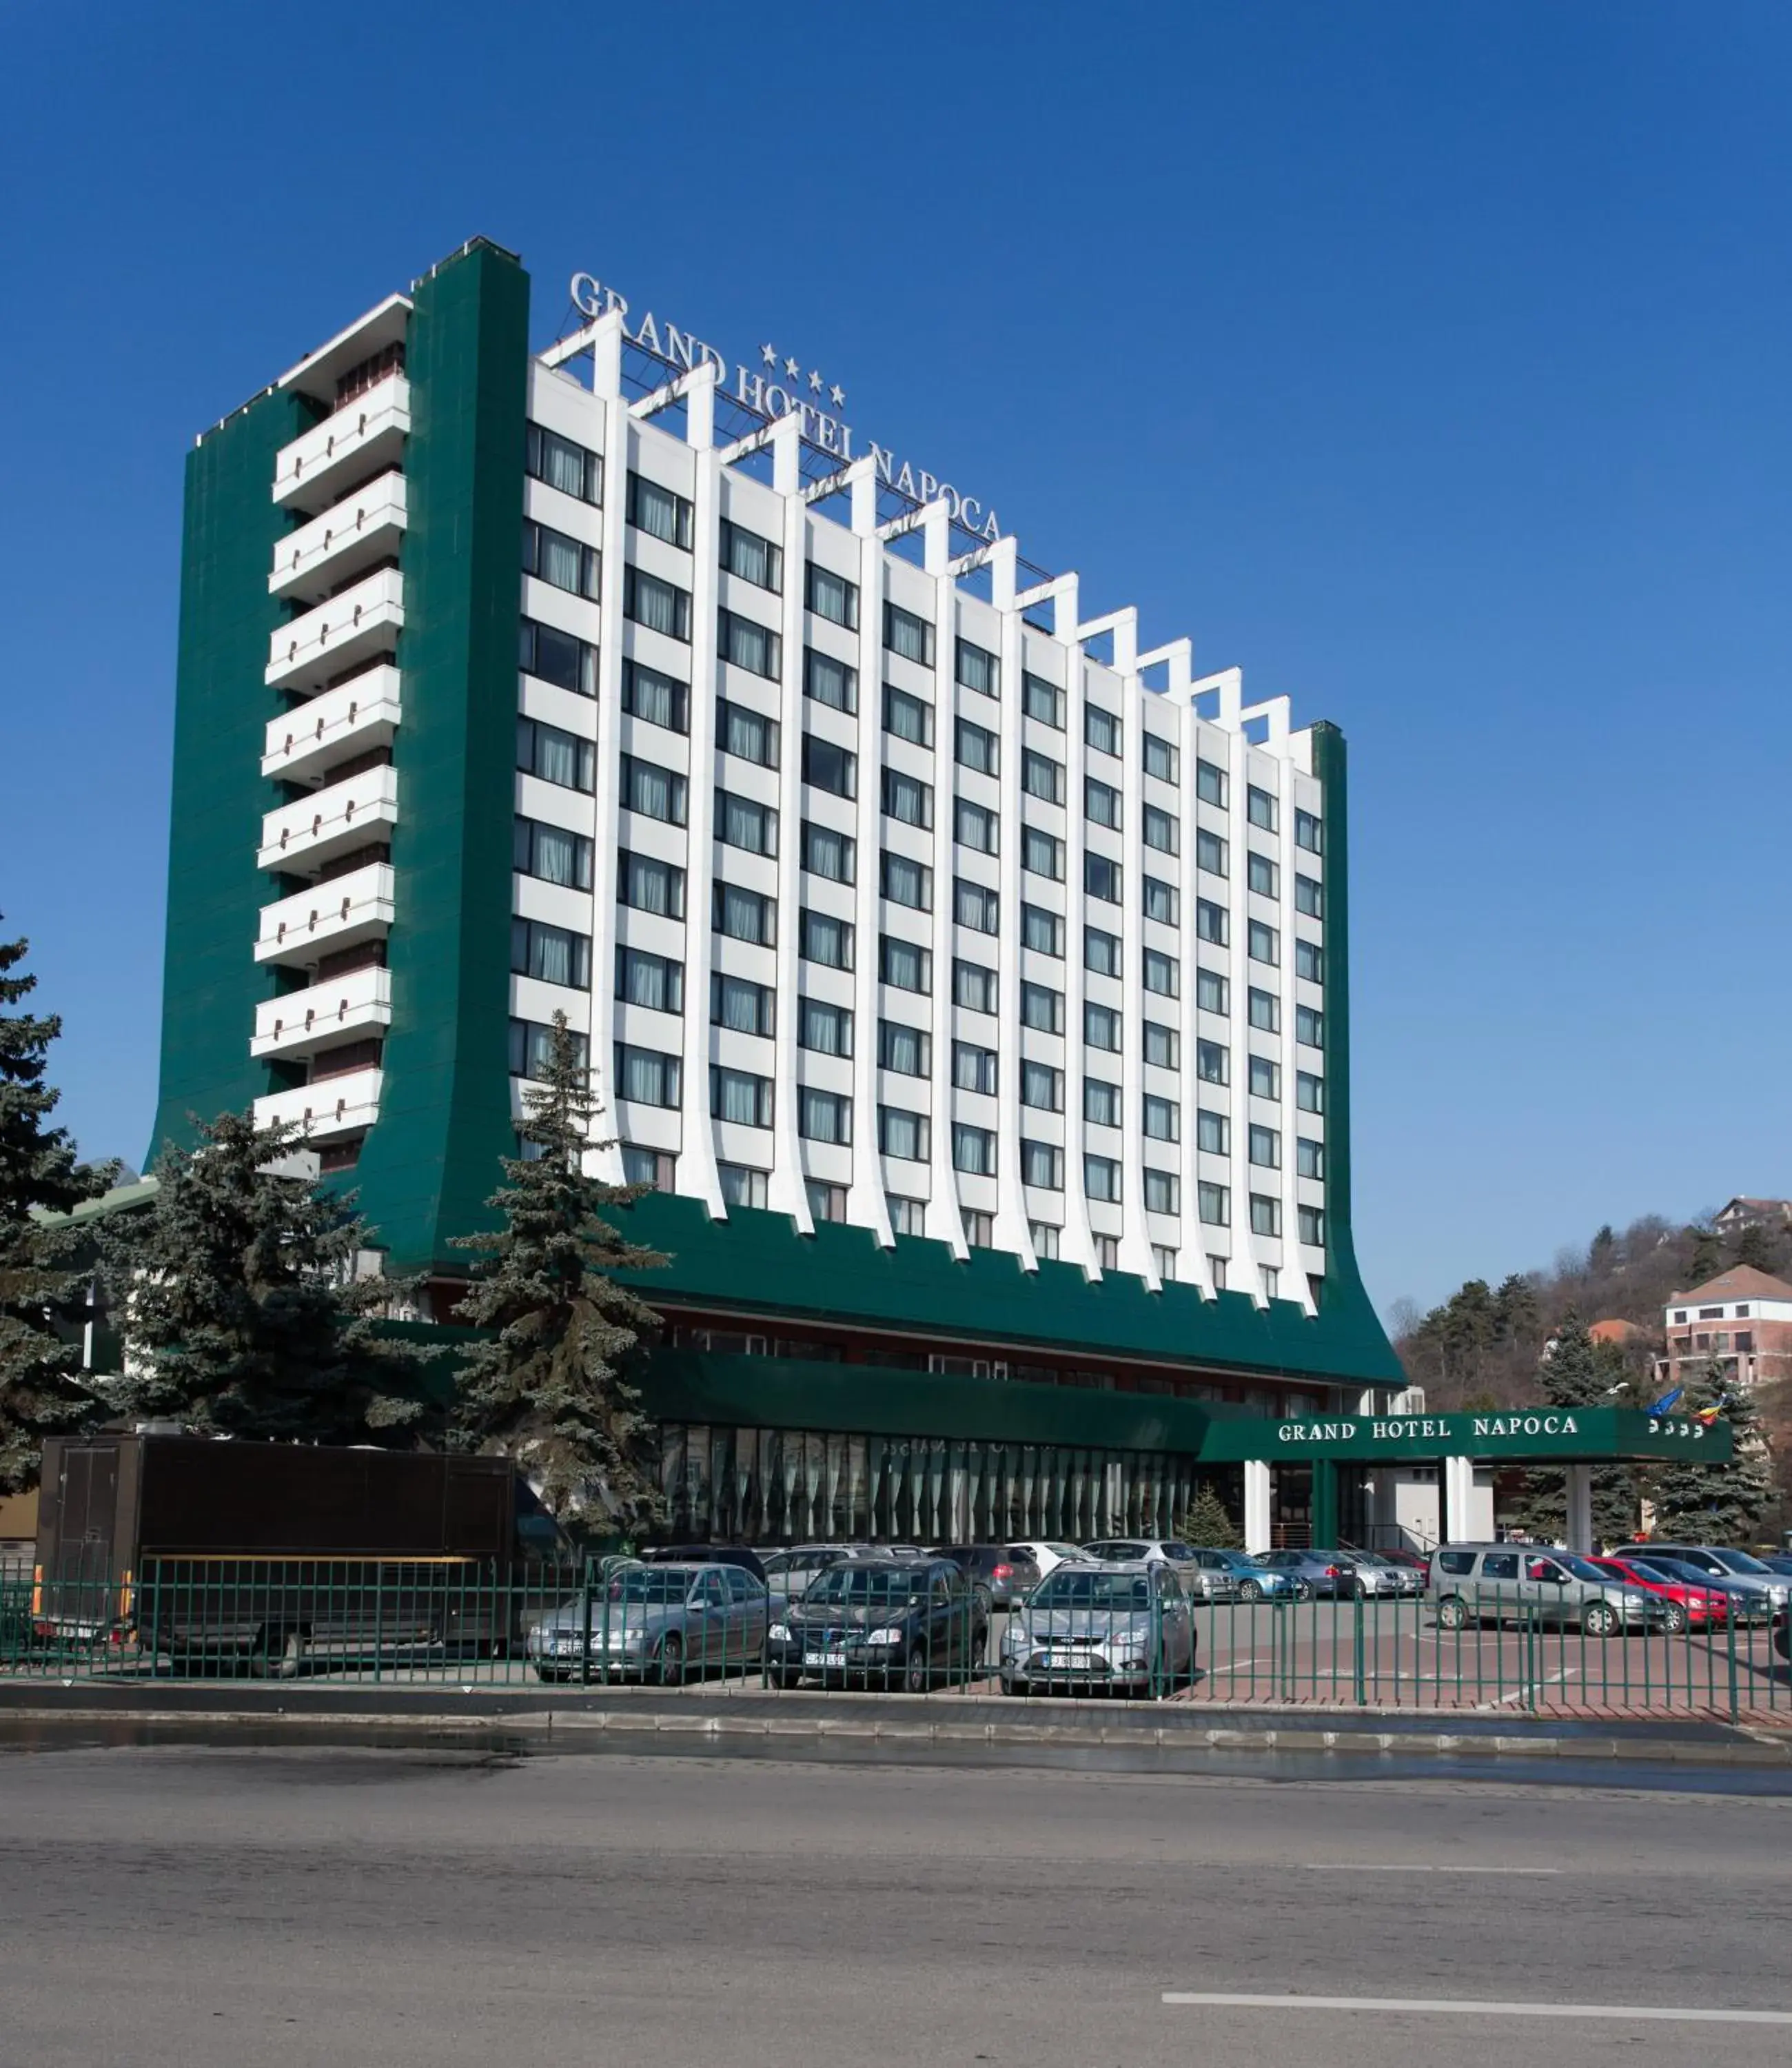 Facade/entrance, Property Building in Grand Hotel Napoca